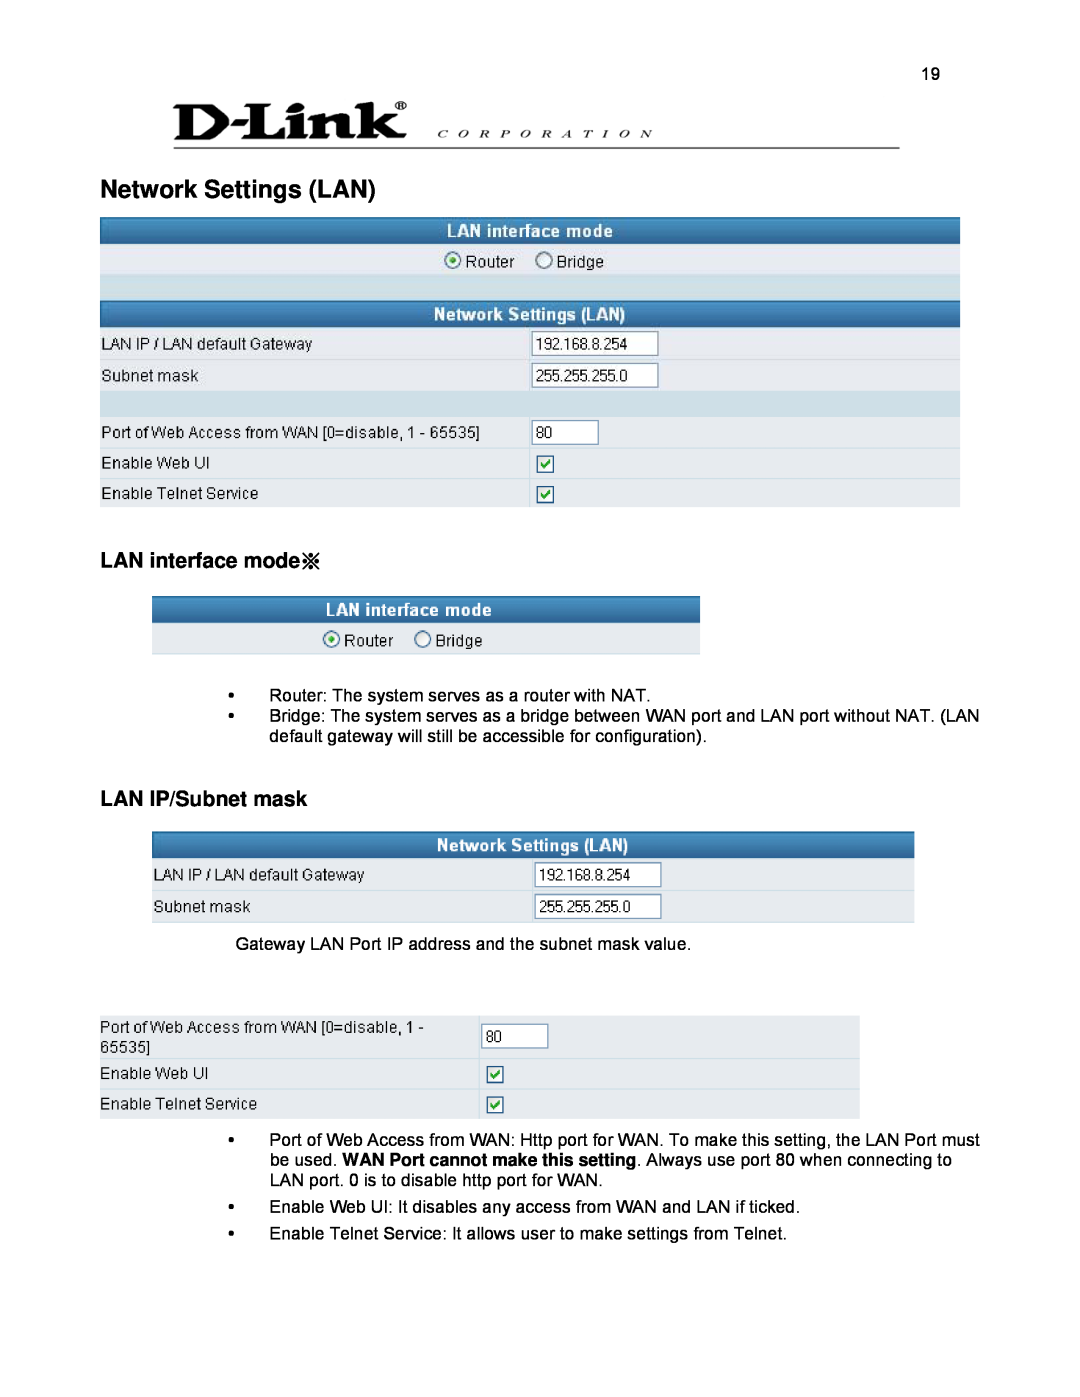 D-Link DVG-2032S user manual Network Settings LAN, LAN interface mode※, LAN IP/Subnet mask 